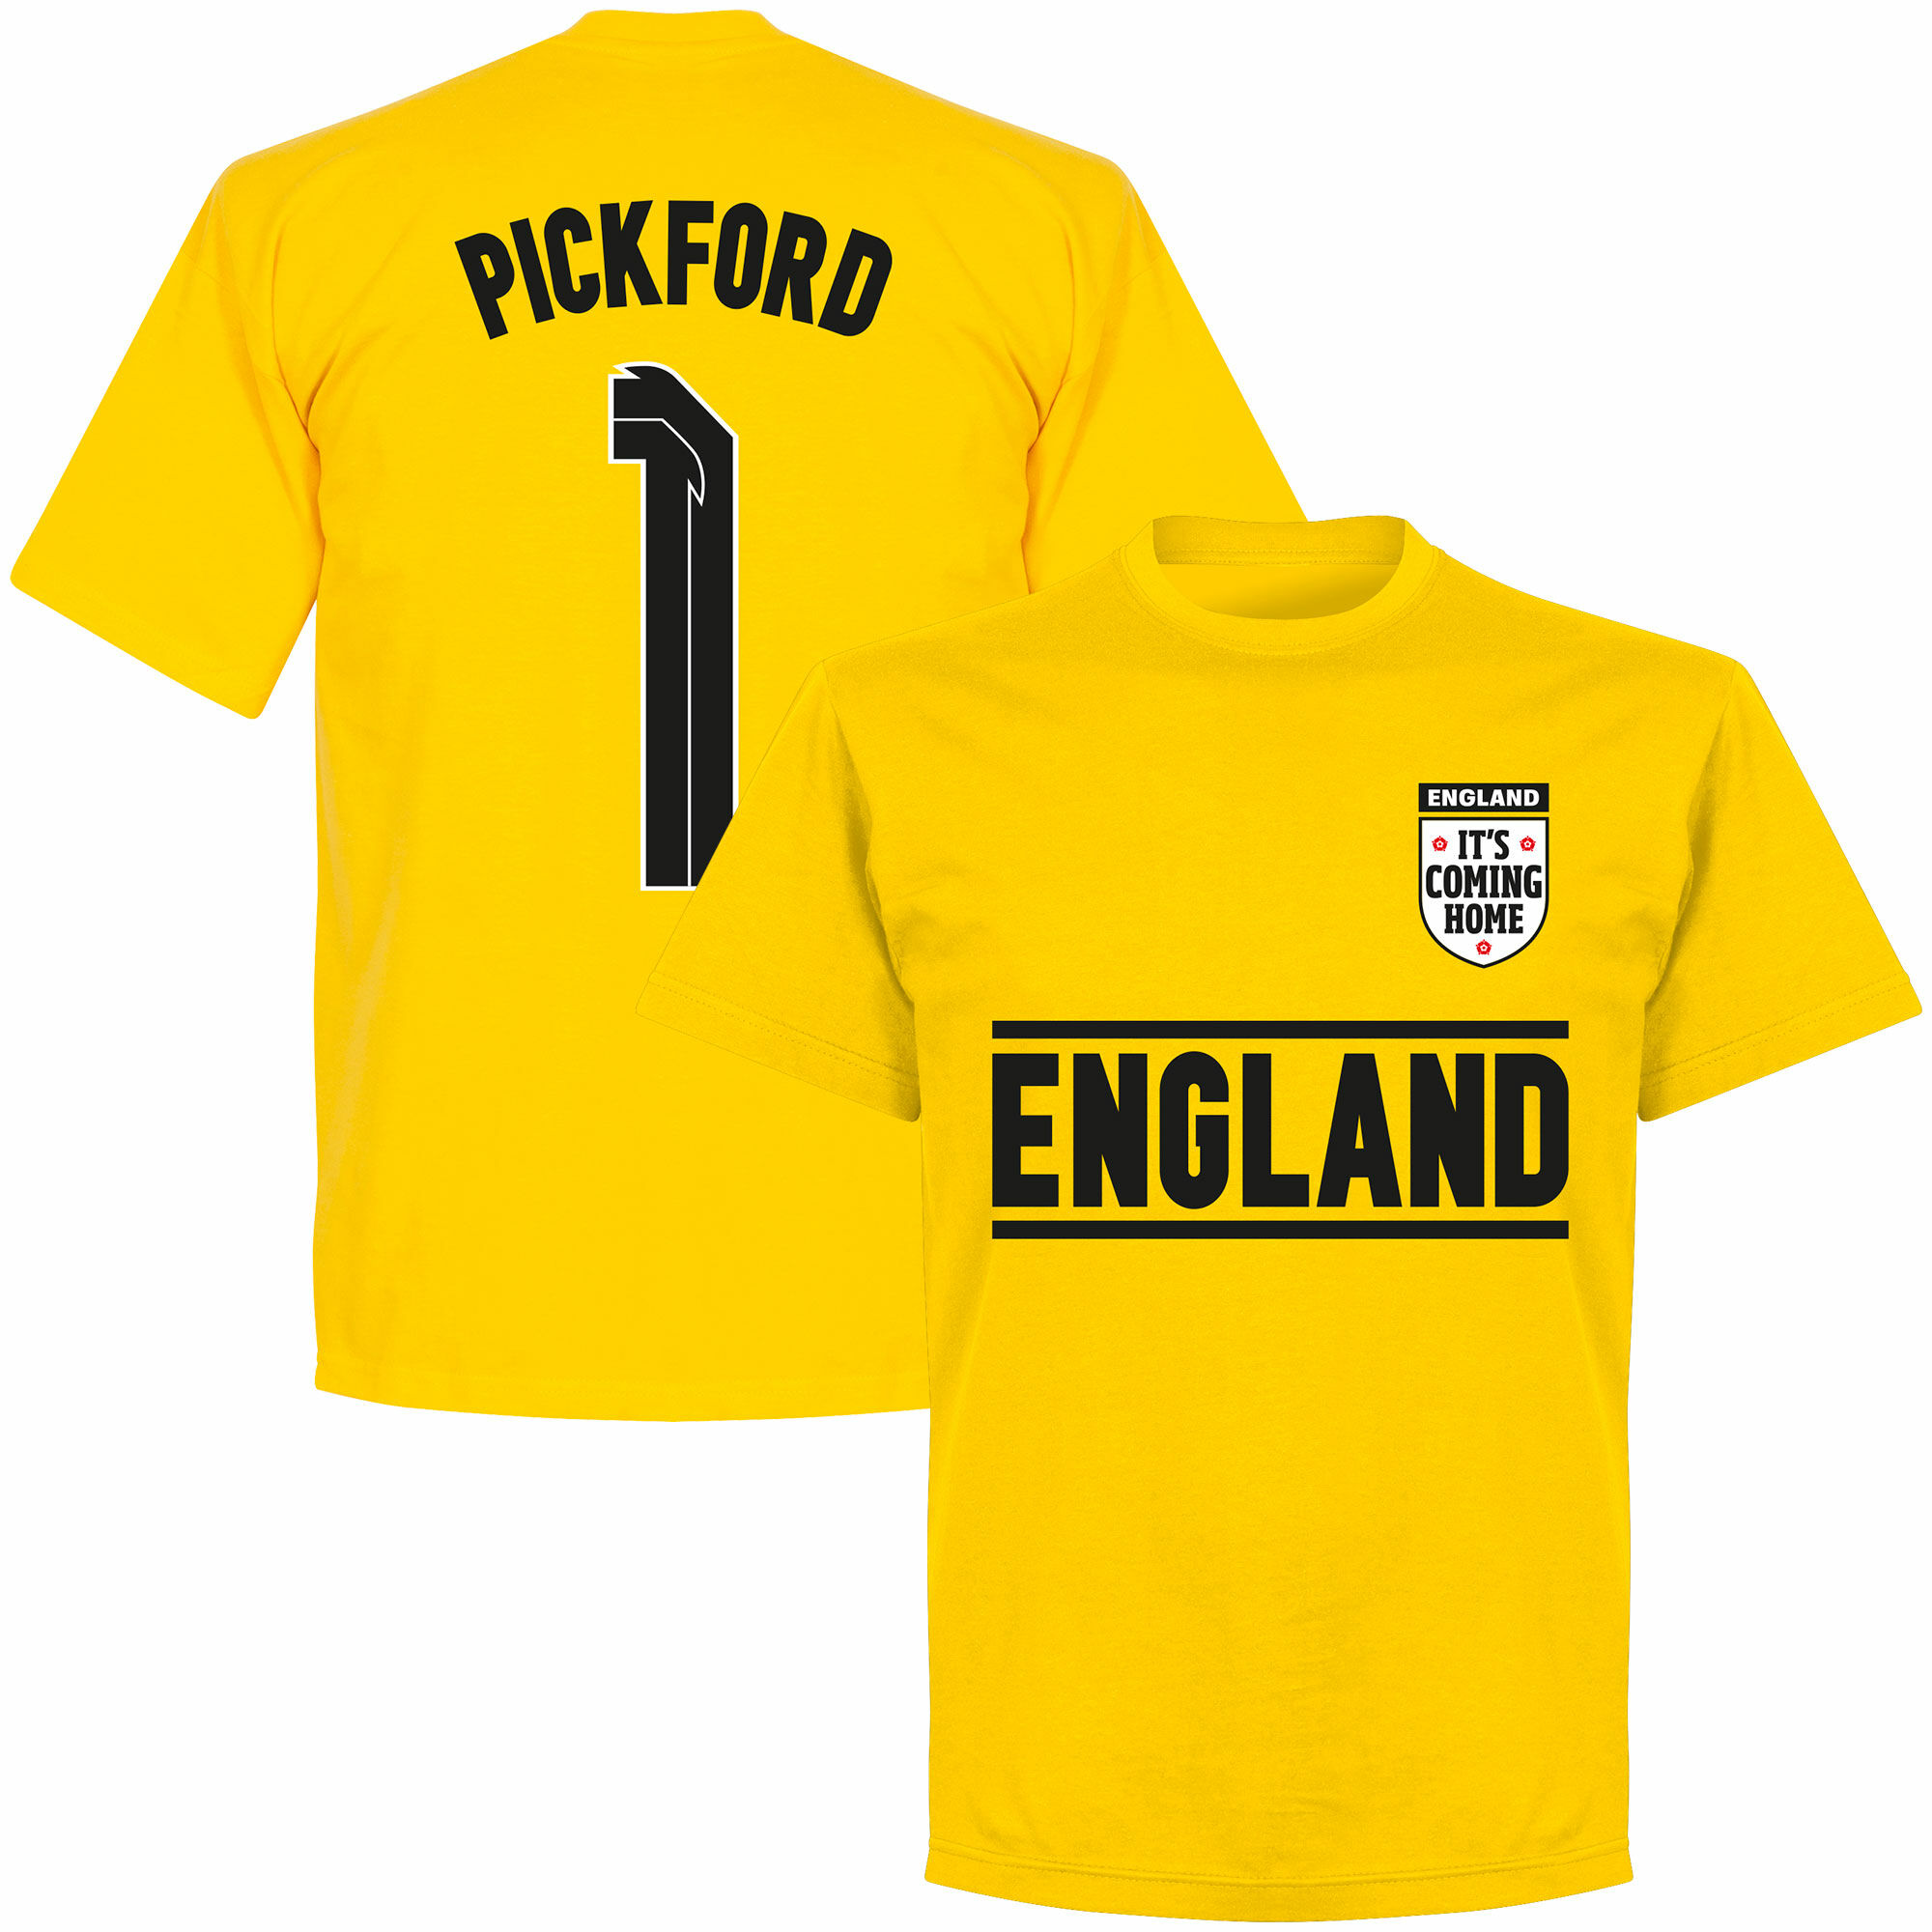 Anglie - Tričko dětské - číslo 1, žluté, Jordan Pickford